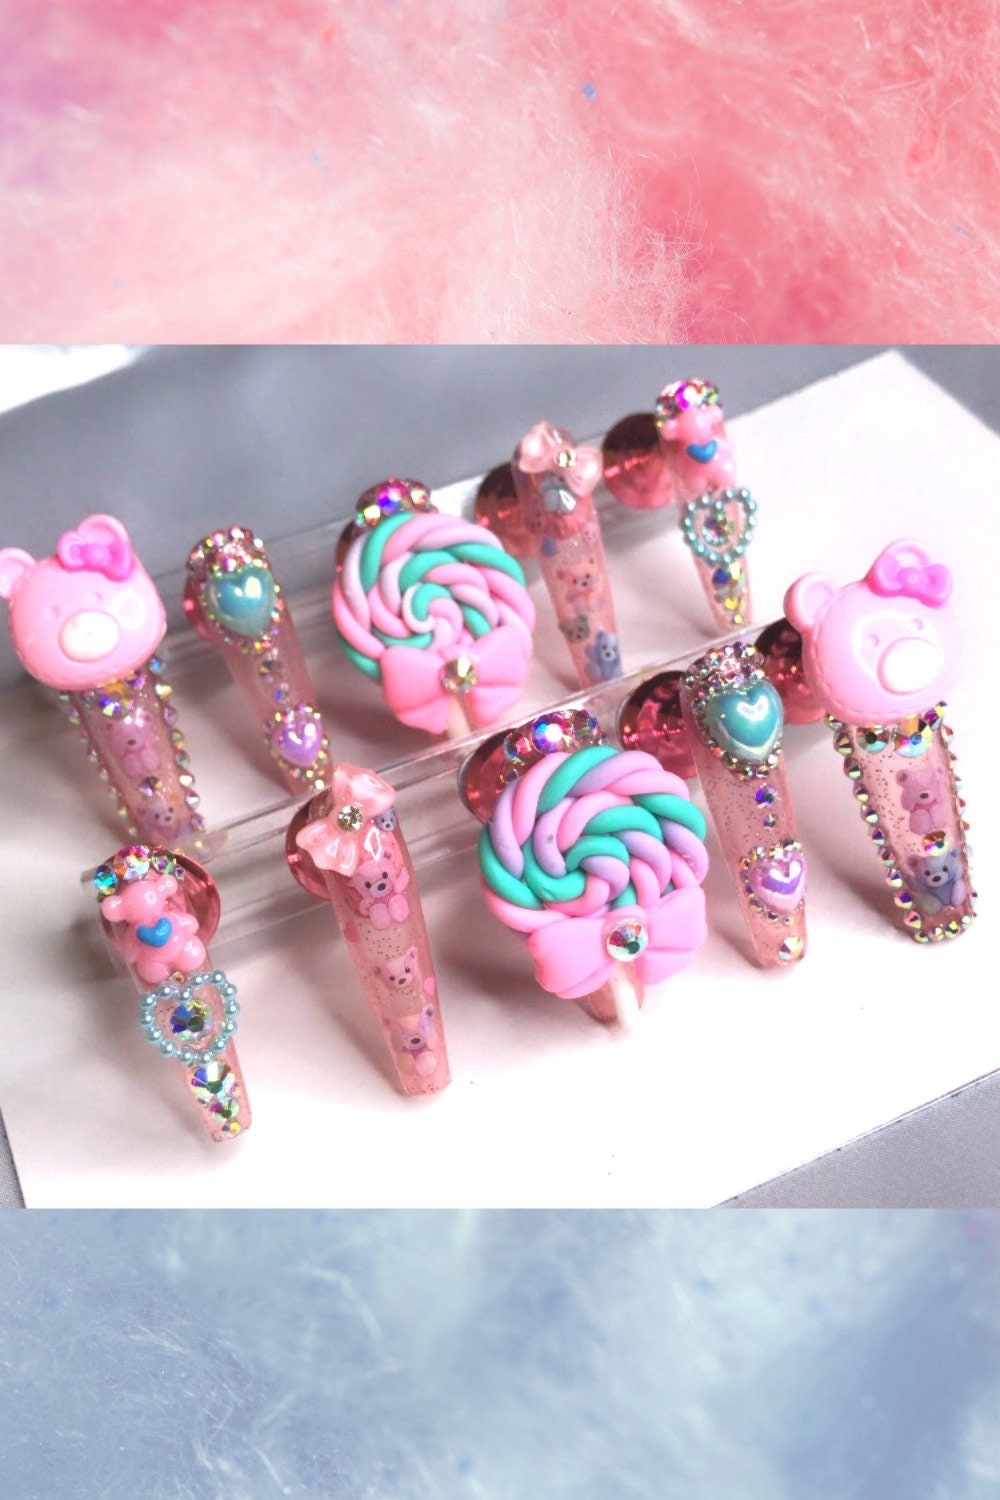 Peekabear - Größe Medium Kawaii Pink Teddybär Luxus Press On Nagel Set/Kawaii Nägel/Teddybär Nägel/Candy Nägel/Pink Nägel von GlamourSpellNails